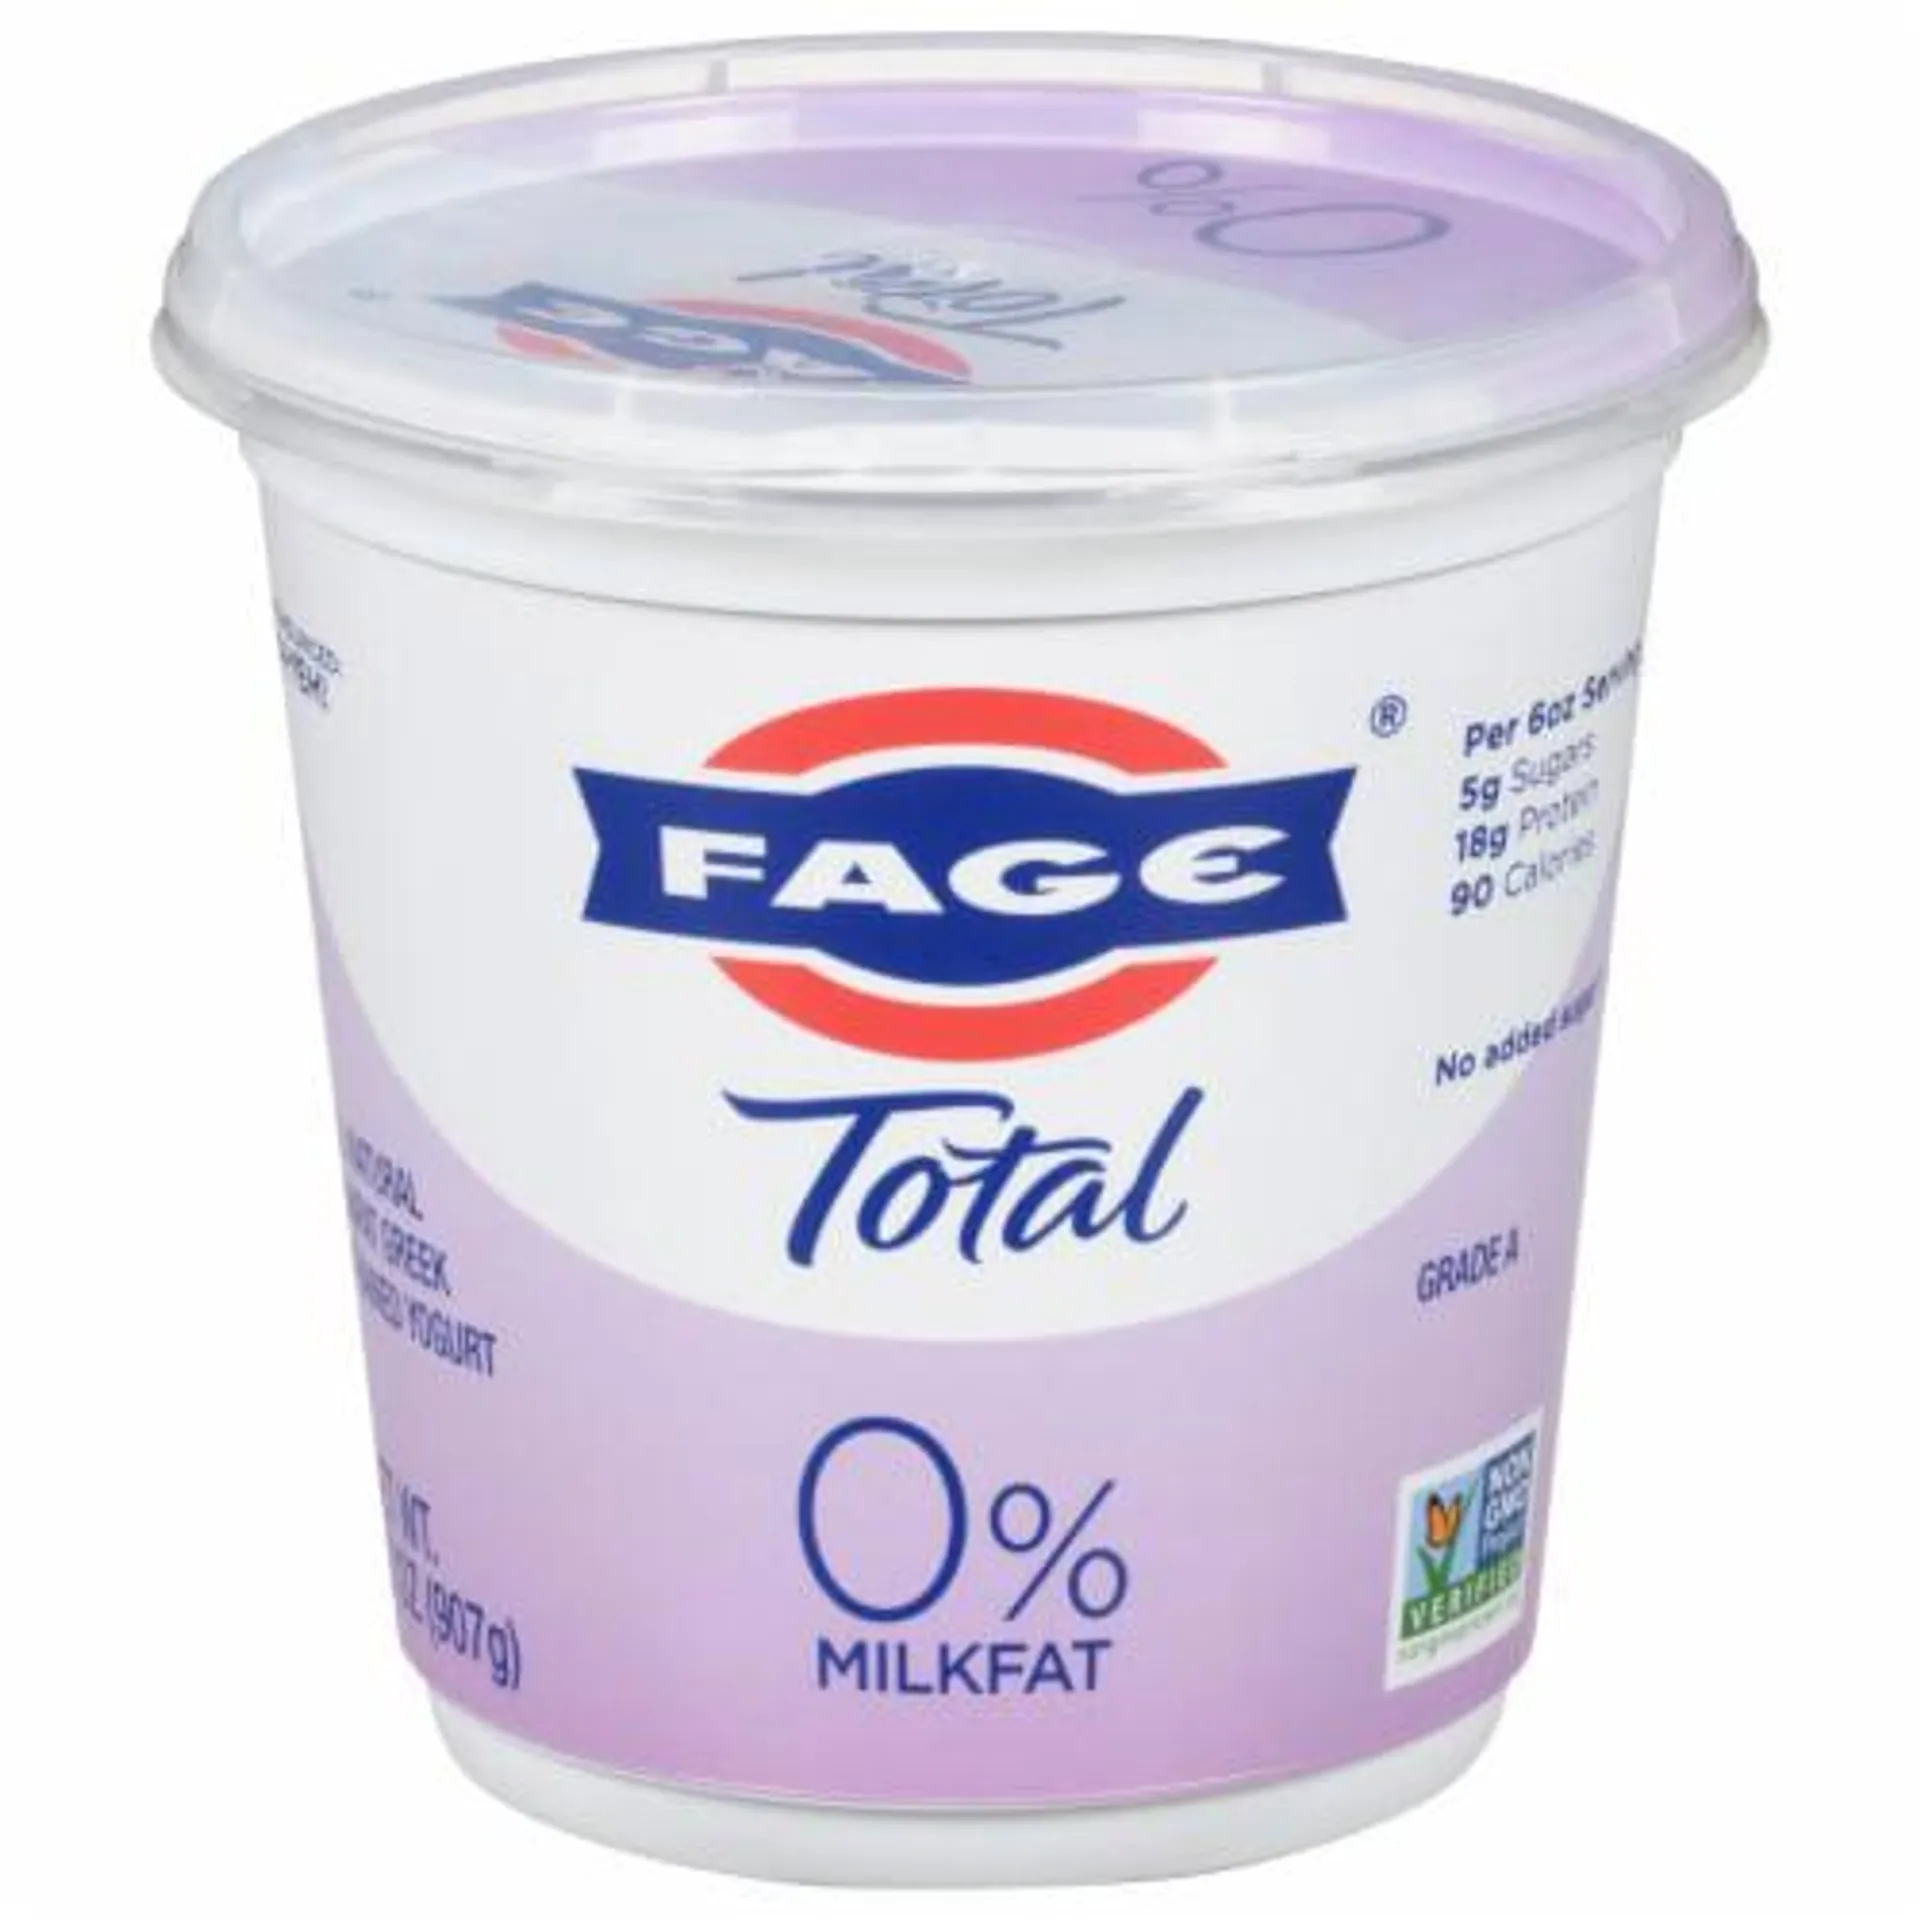 Fage Total 0% Milkfat Plain Greek Yogurt